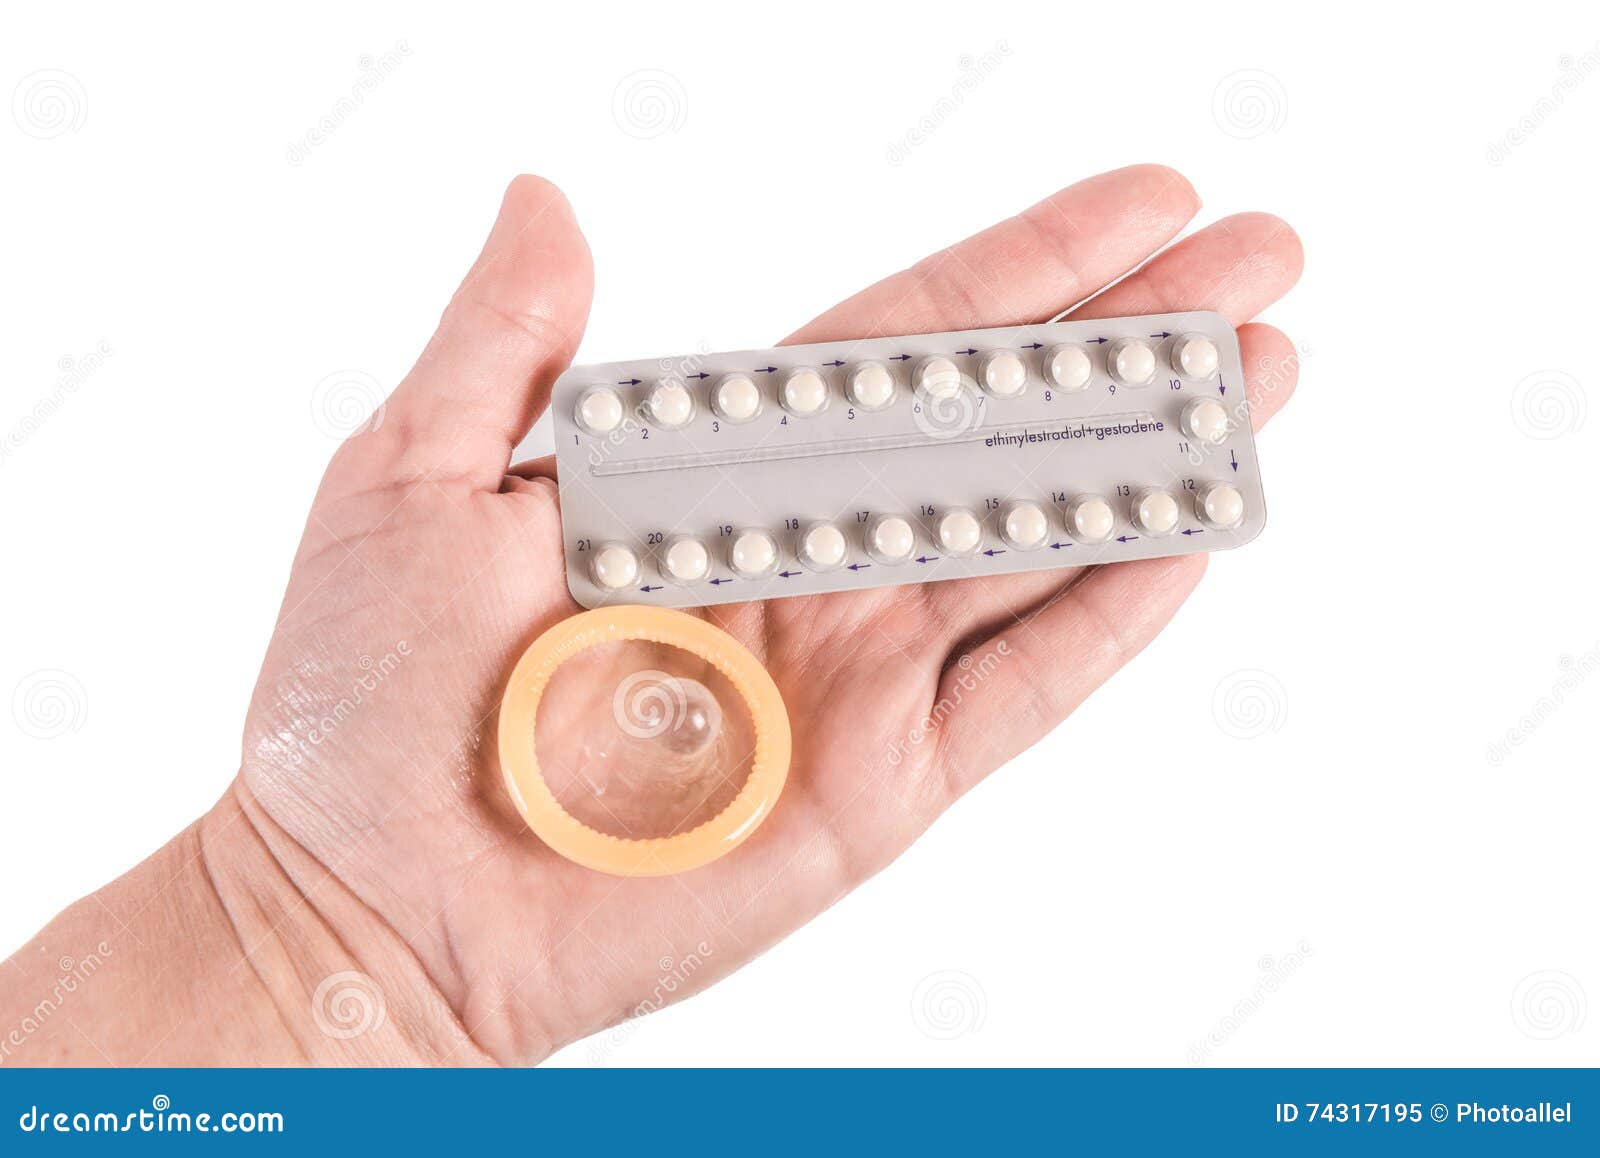 Мужчина пил противозачаточные. Контрацептивы. Контрацептивы презервативы. Барьерные контрацептивы таблетки. Пероральные контрацептивы.